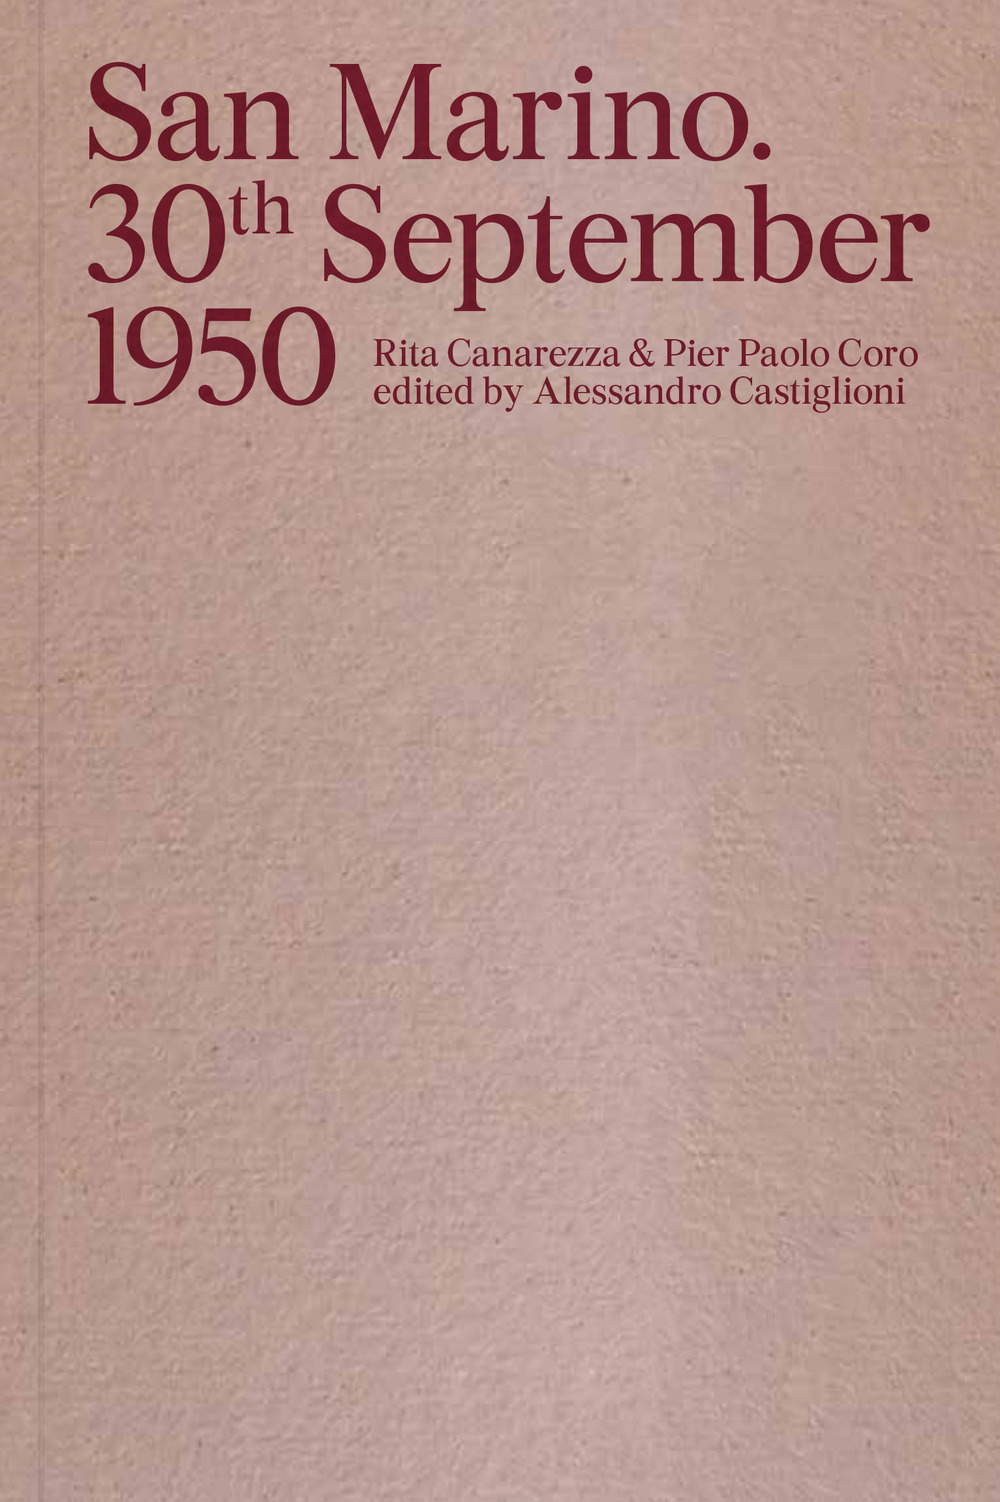 San Marino. 30th September 1950. Ediz. italiana e inglese